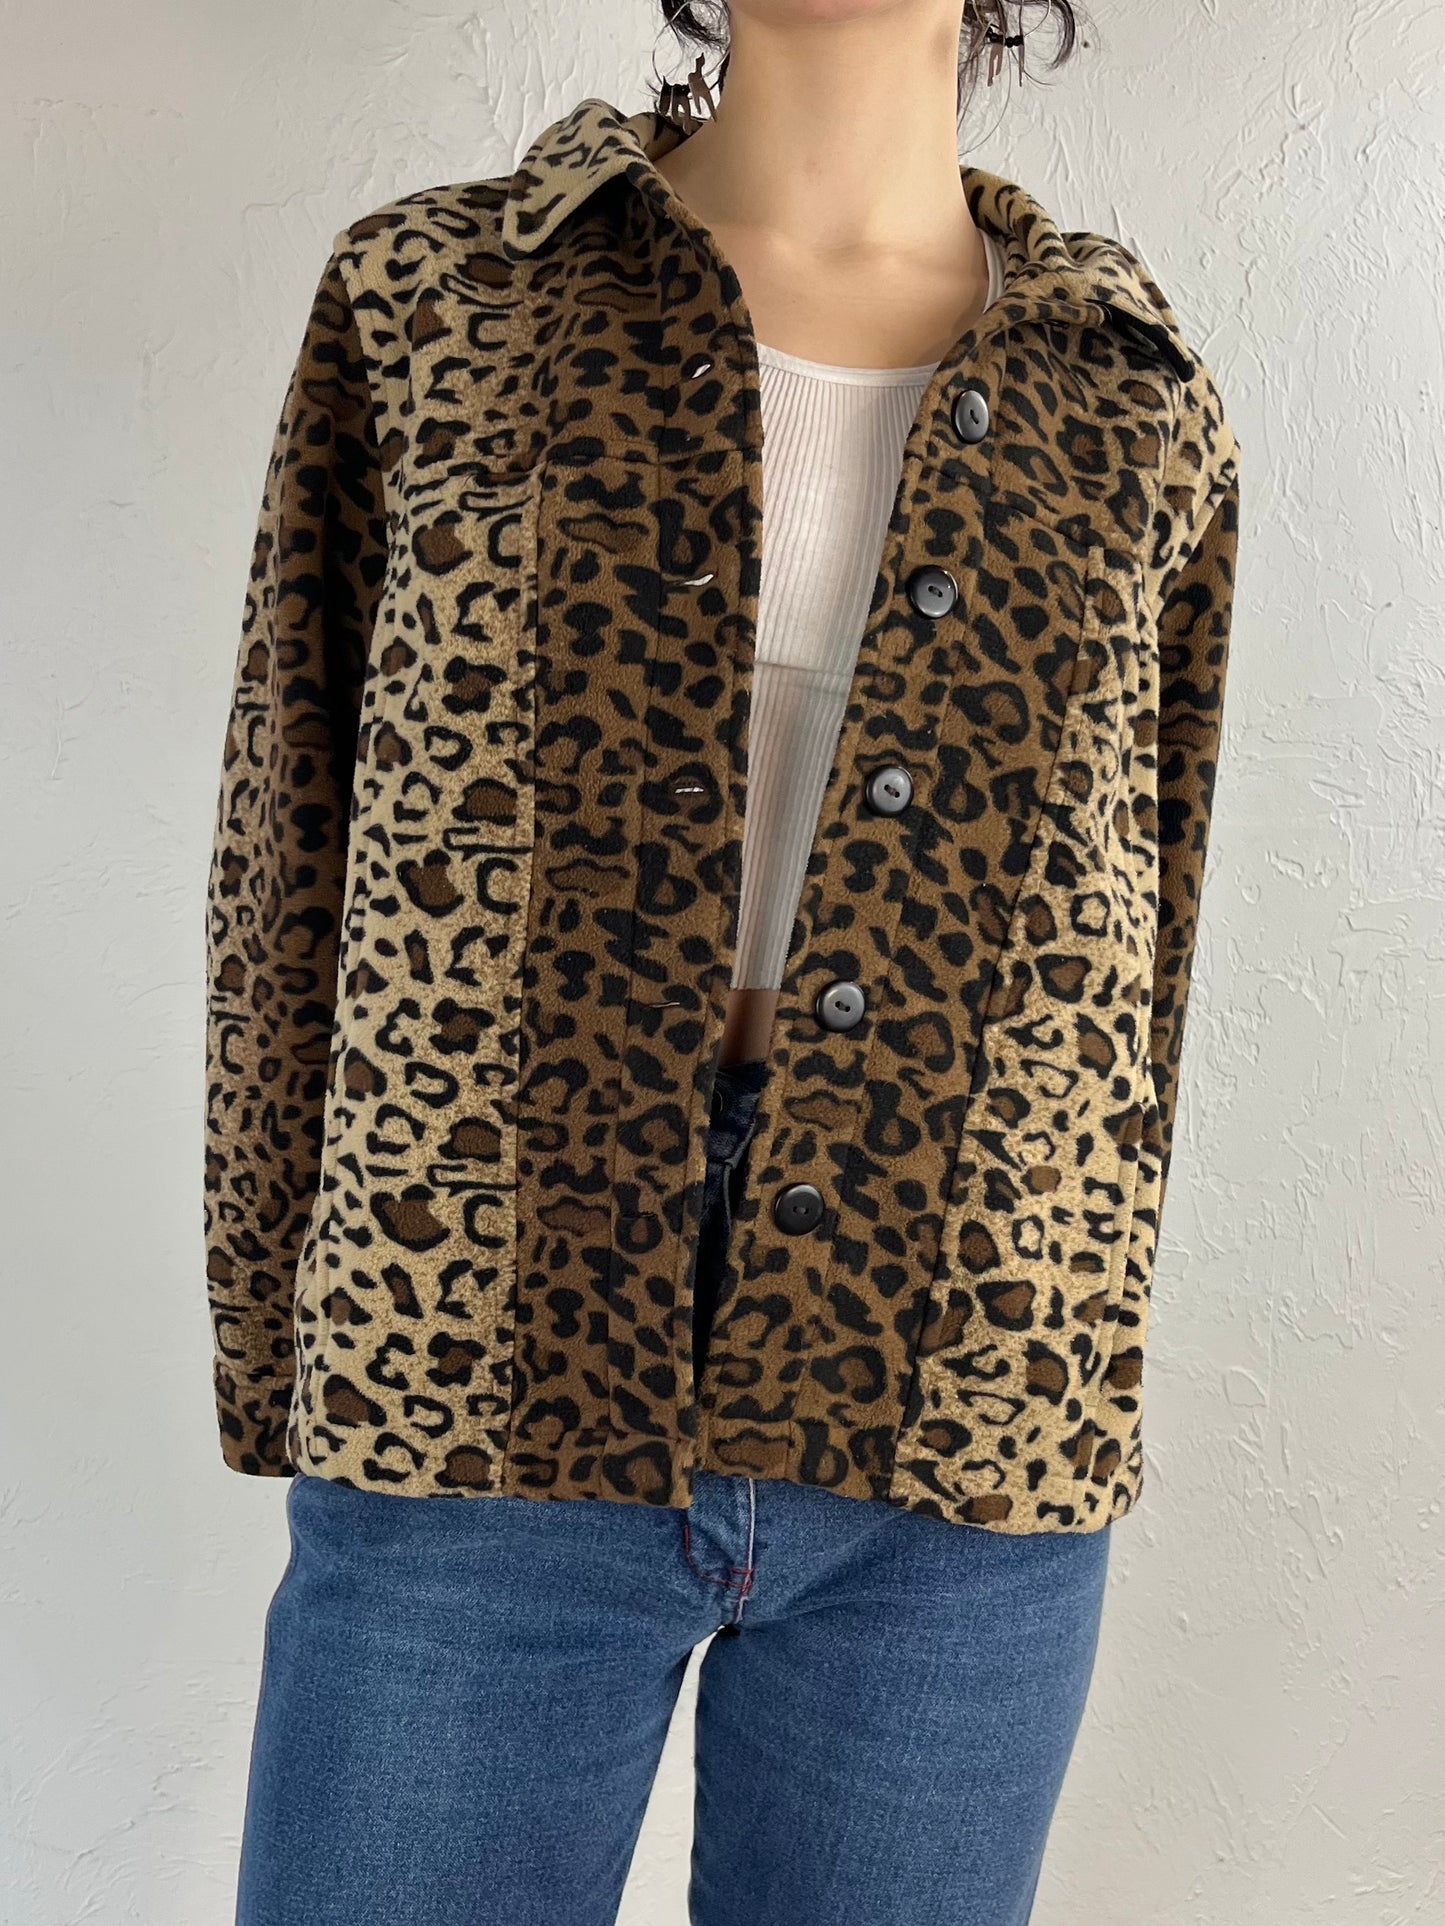 90s 'Carol Reed' Cheetah Print Fleece Jacket / Medium